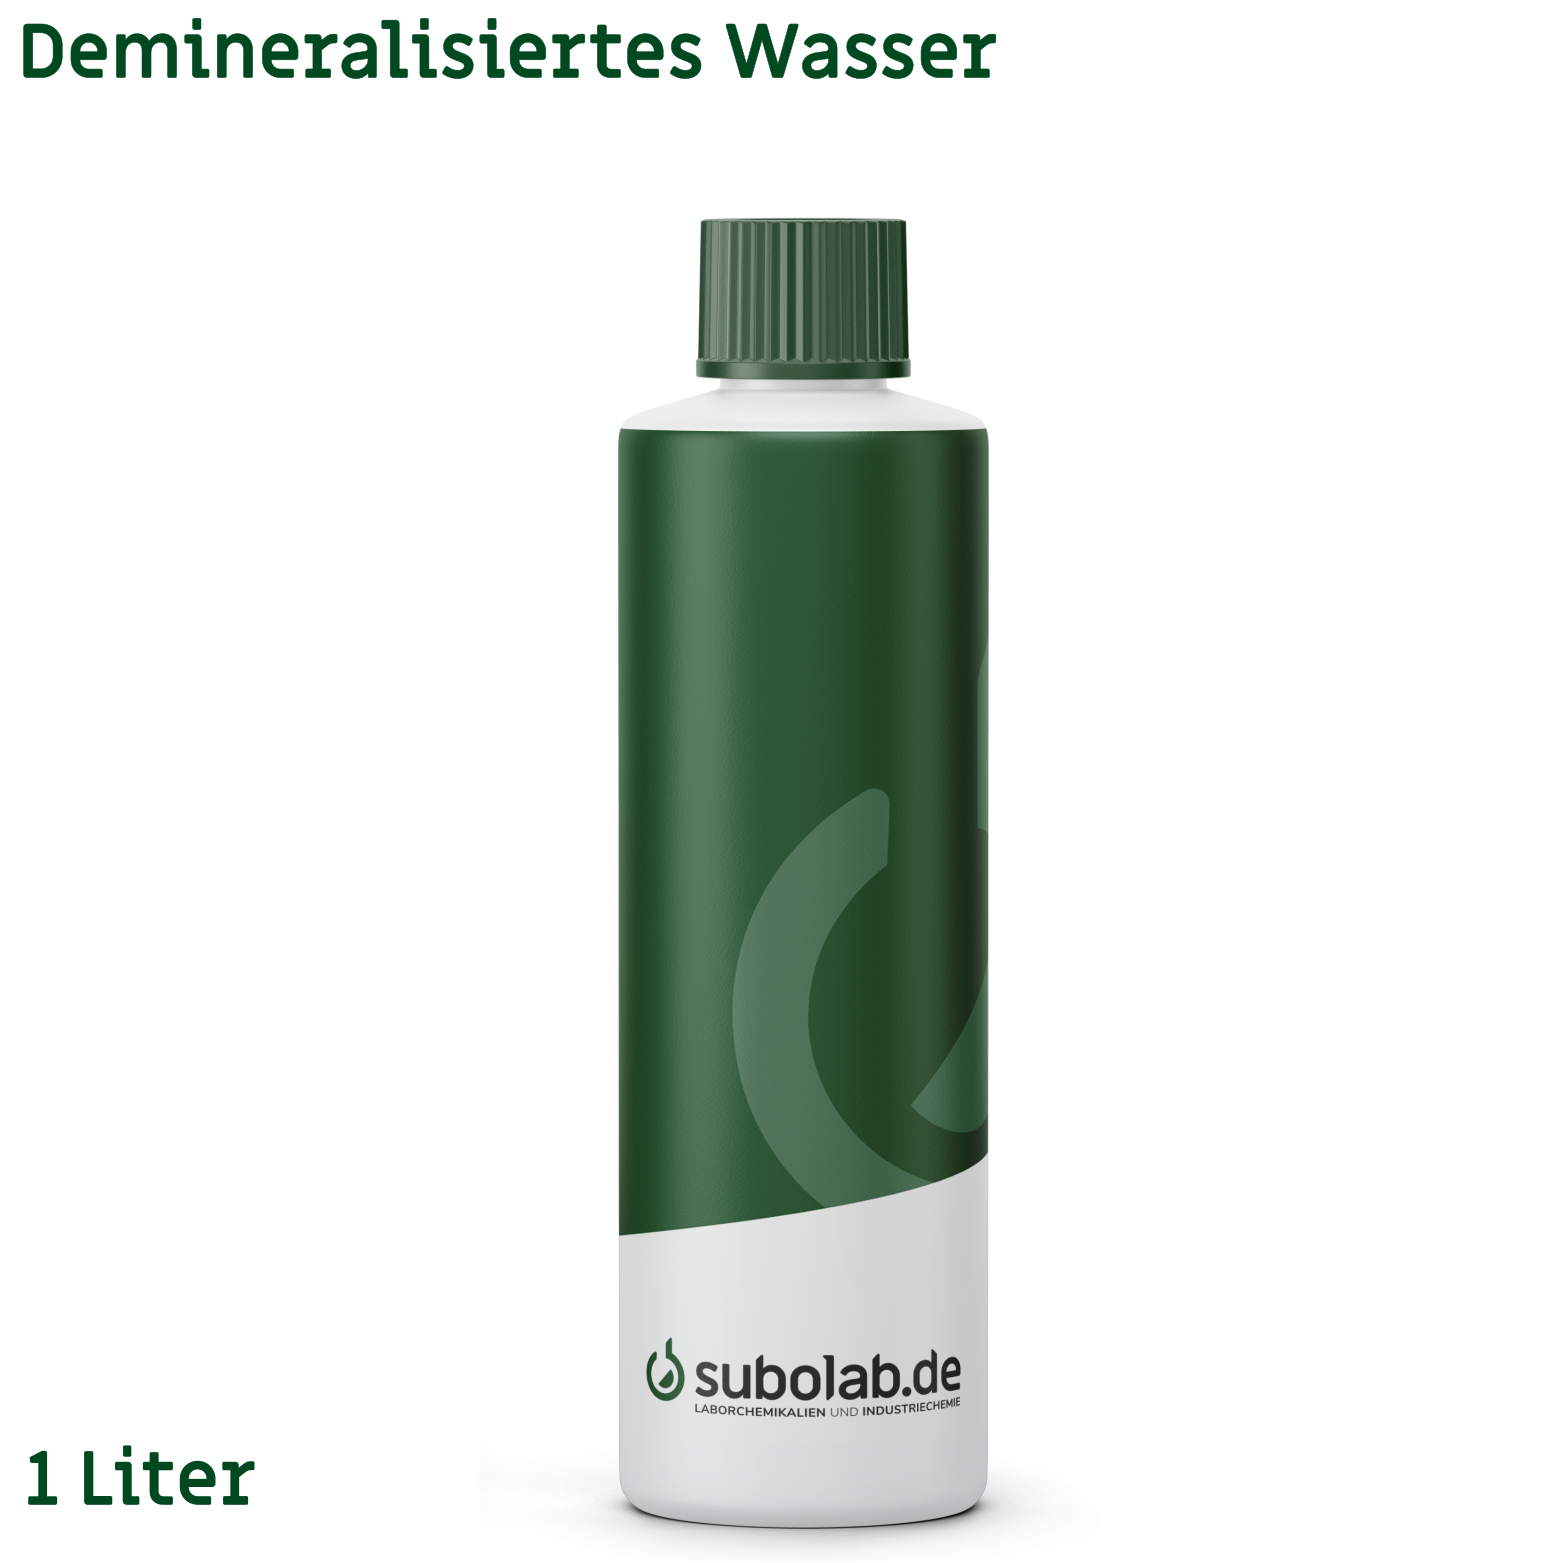 Bild von Demineralisiertes Wasser (1 Liter)